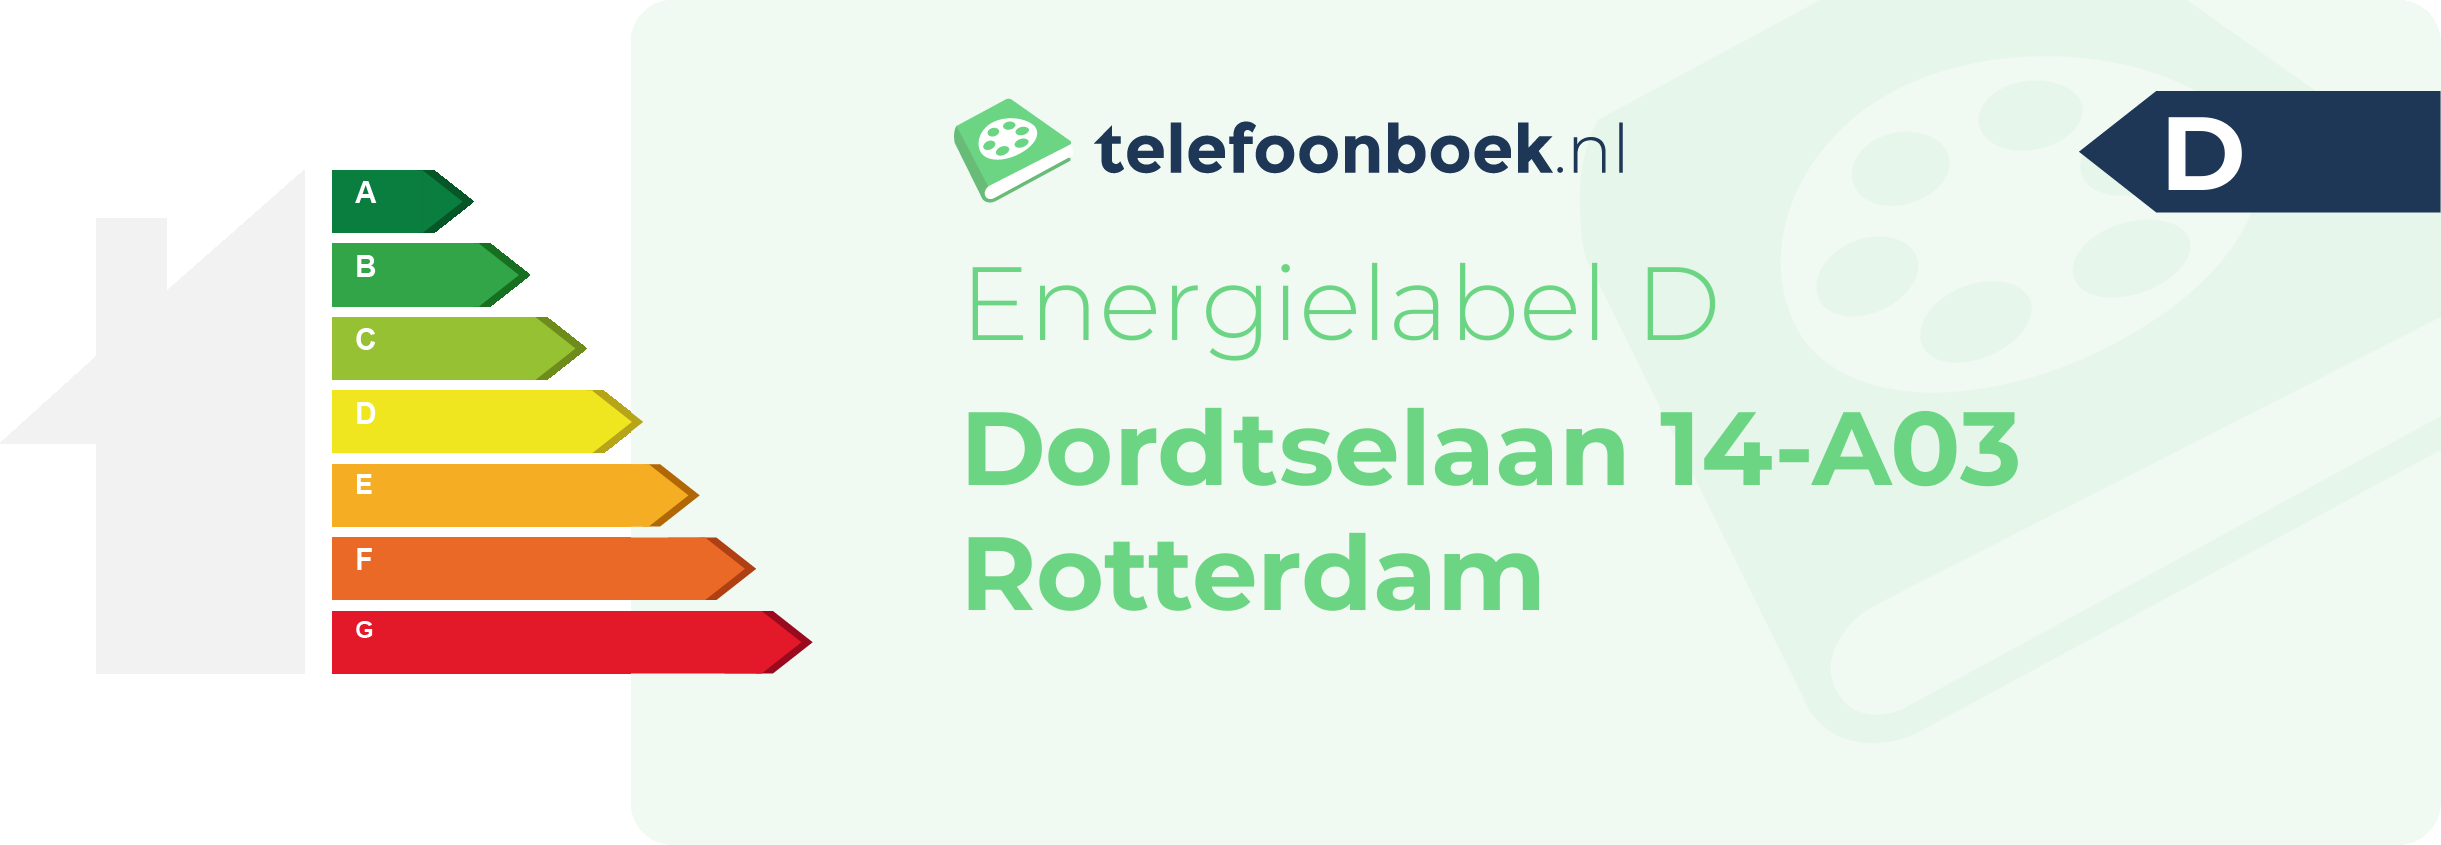 Energielabel Dordtselaan 14-A03 Rotterdam